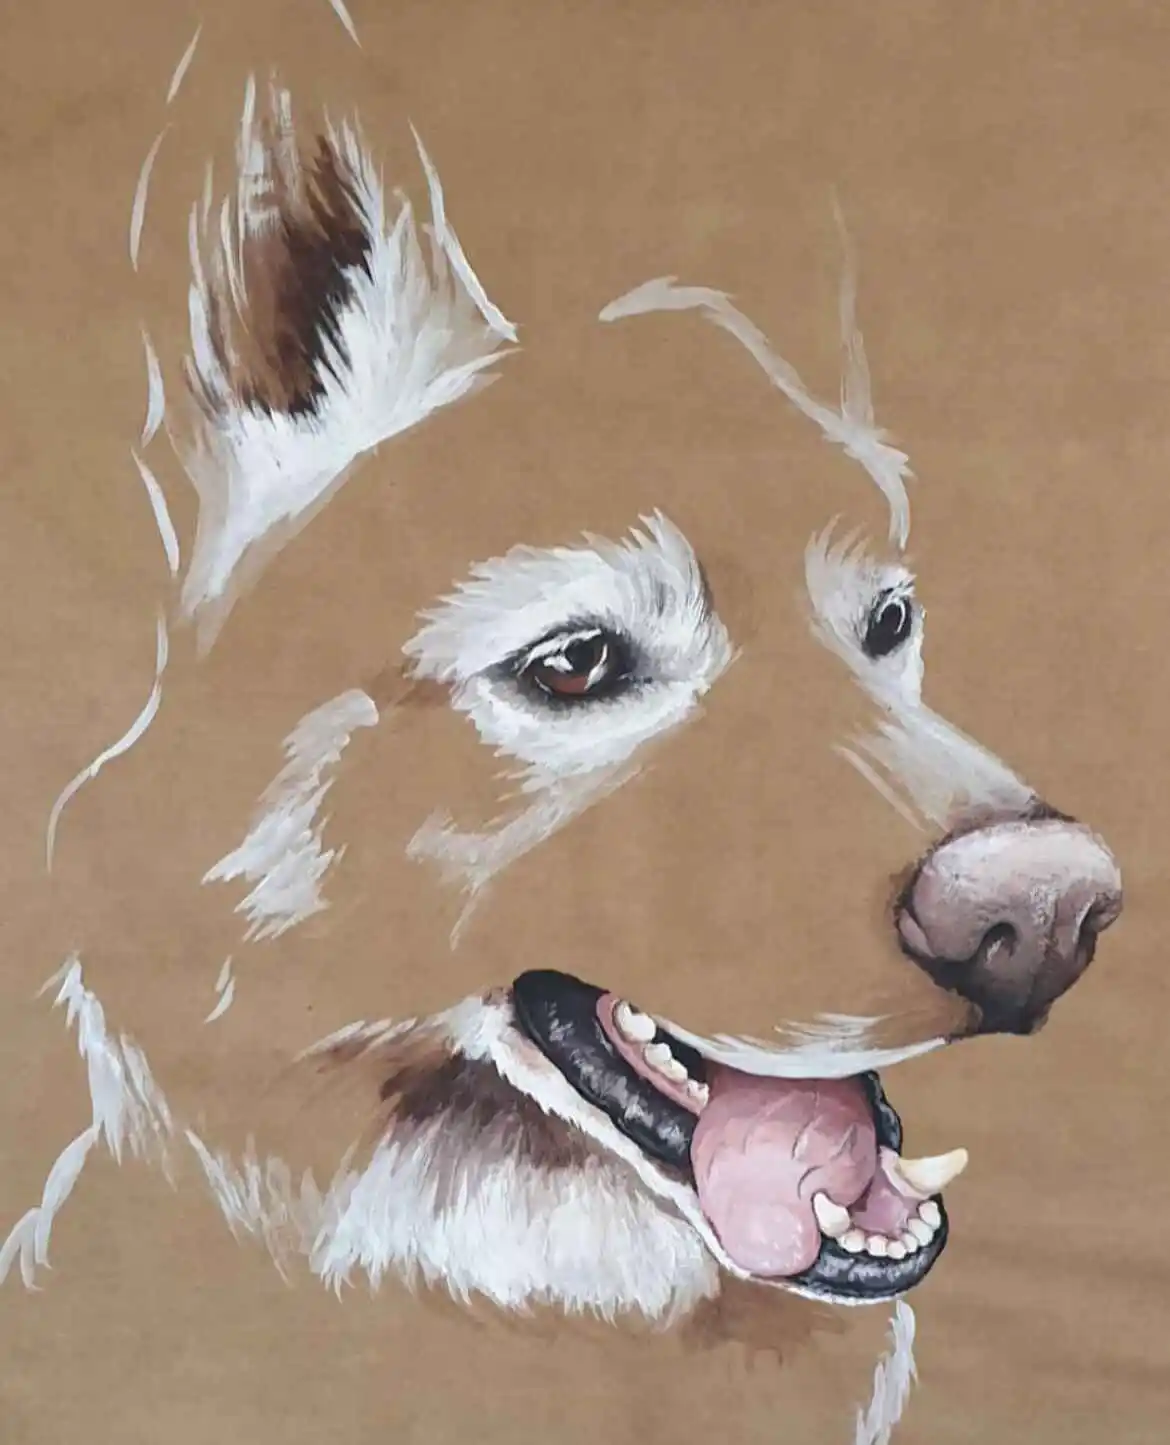 acrylic image of huskey